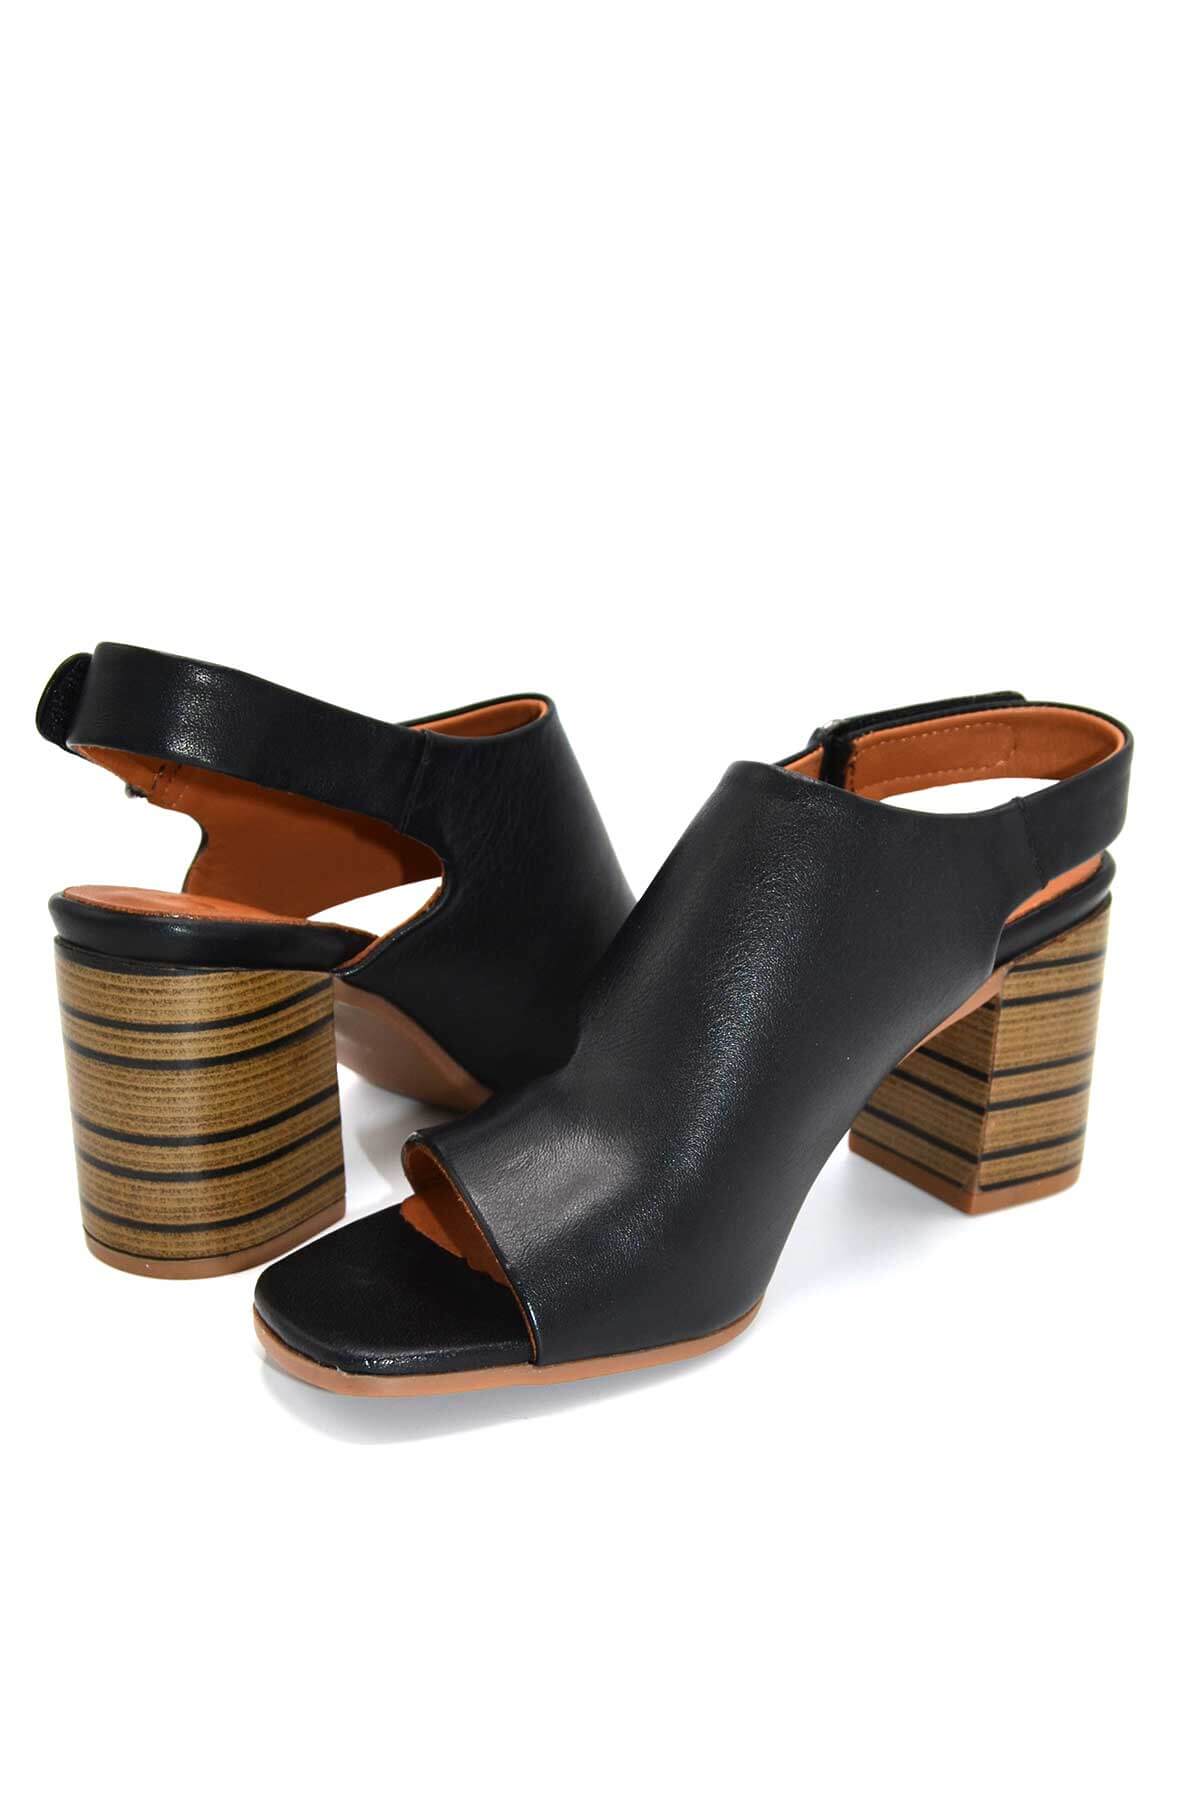 Kadın Topuklu Deri Sandalet Siyah 2108502Y